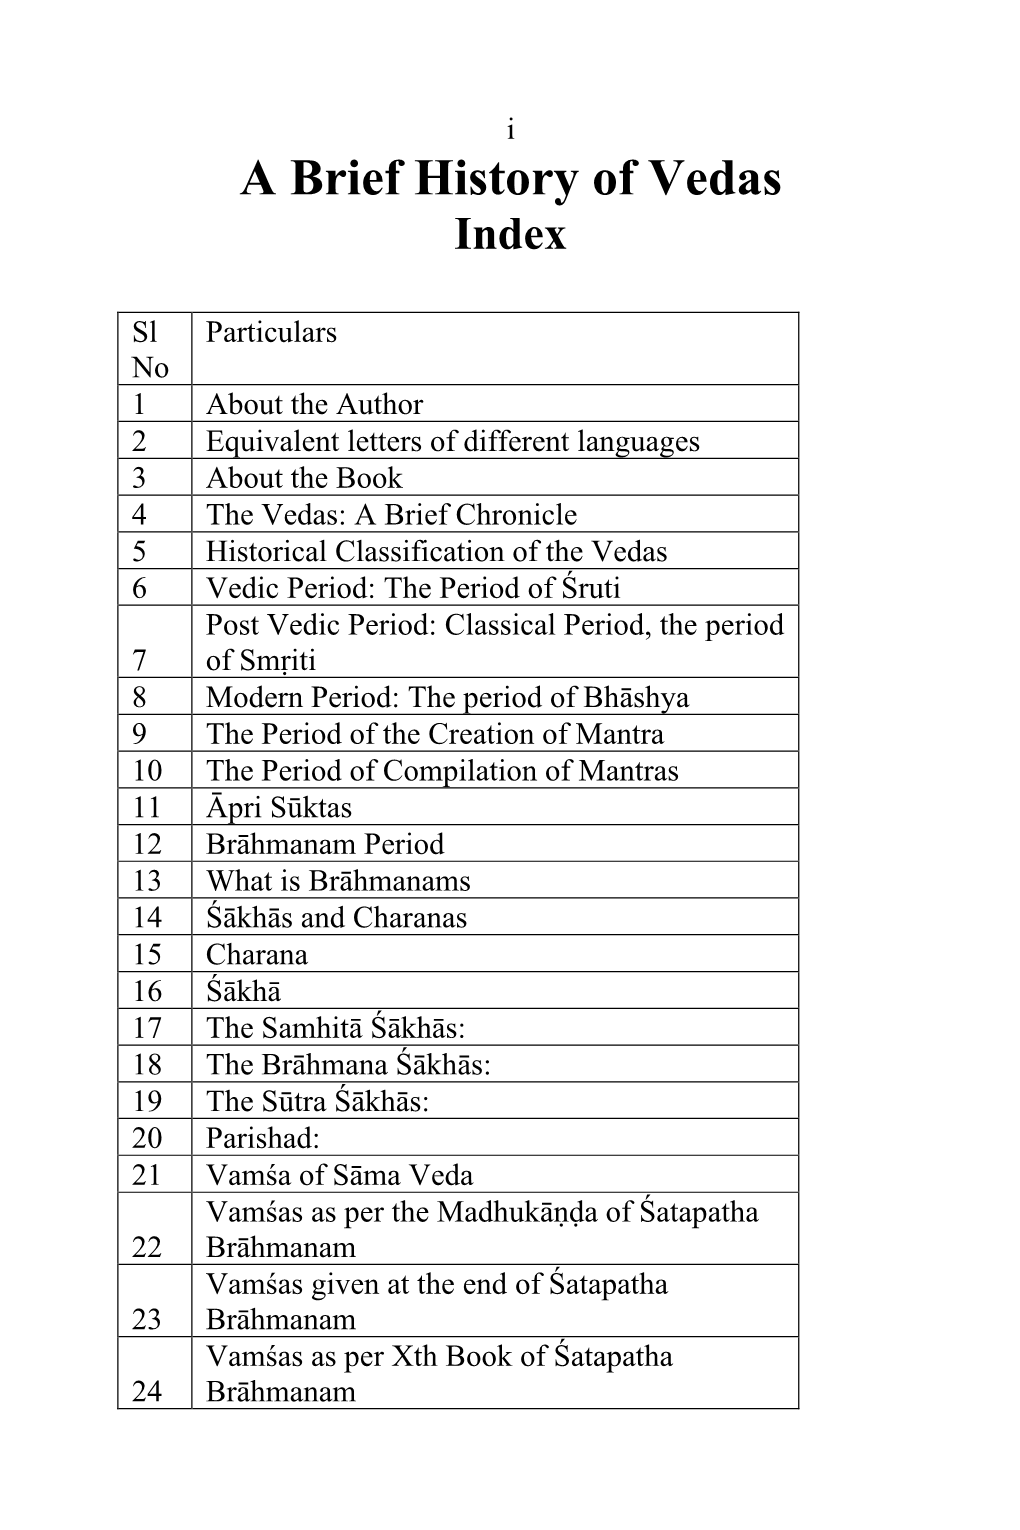 A Brief History of Vedas Index